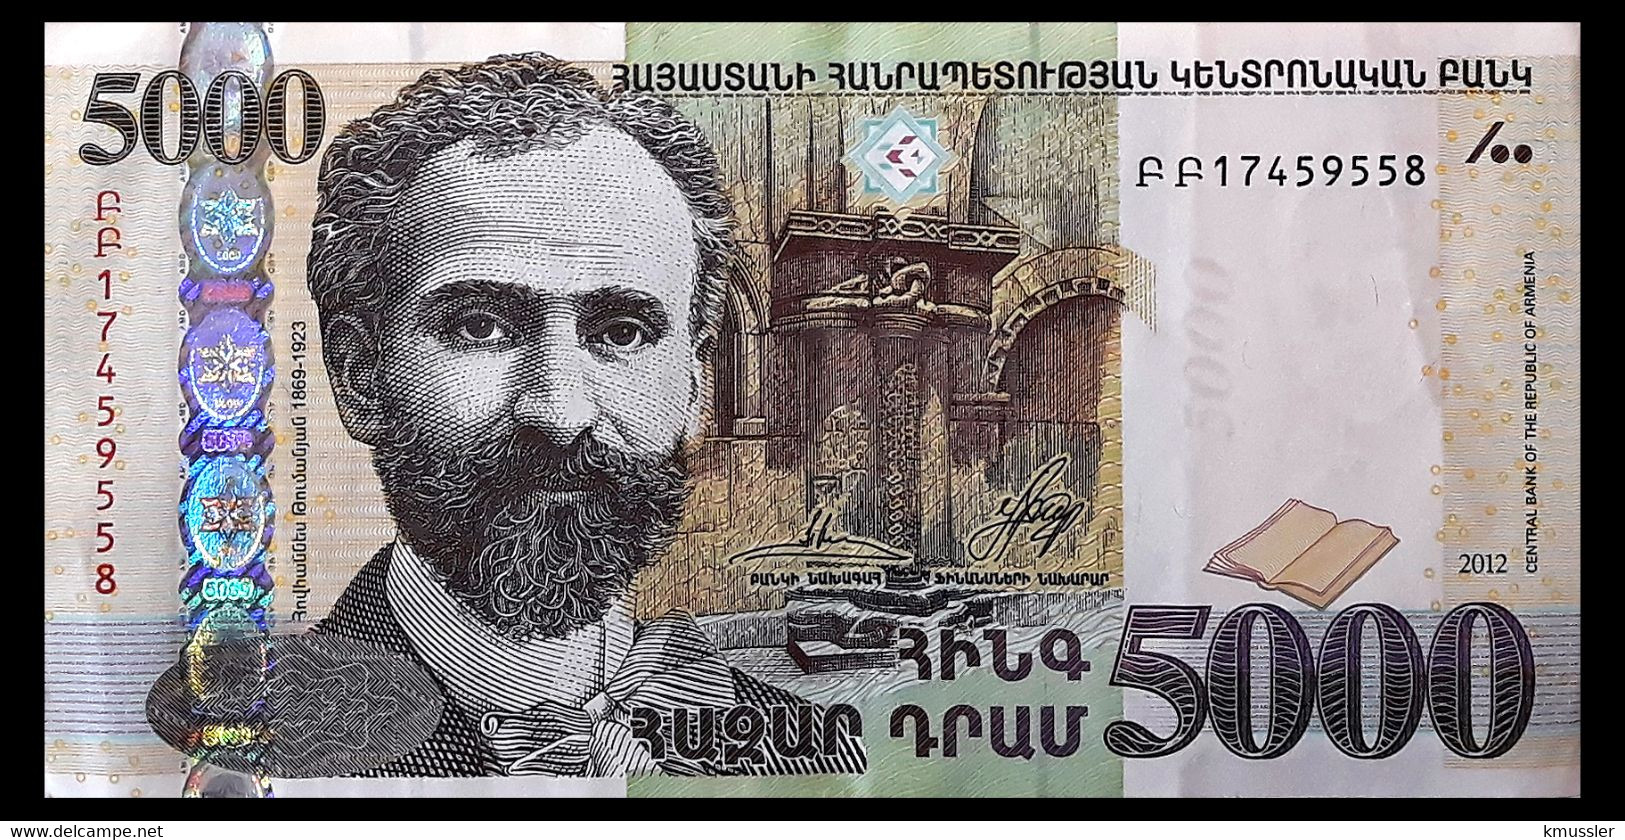 # # # Banknote Aus Armenien 5.000 Dram # # # - Armenien